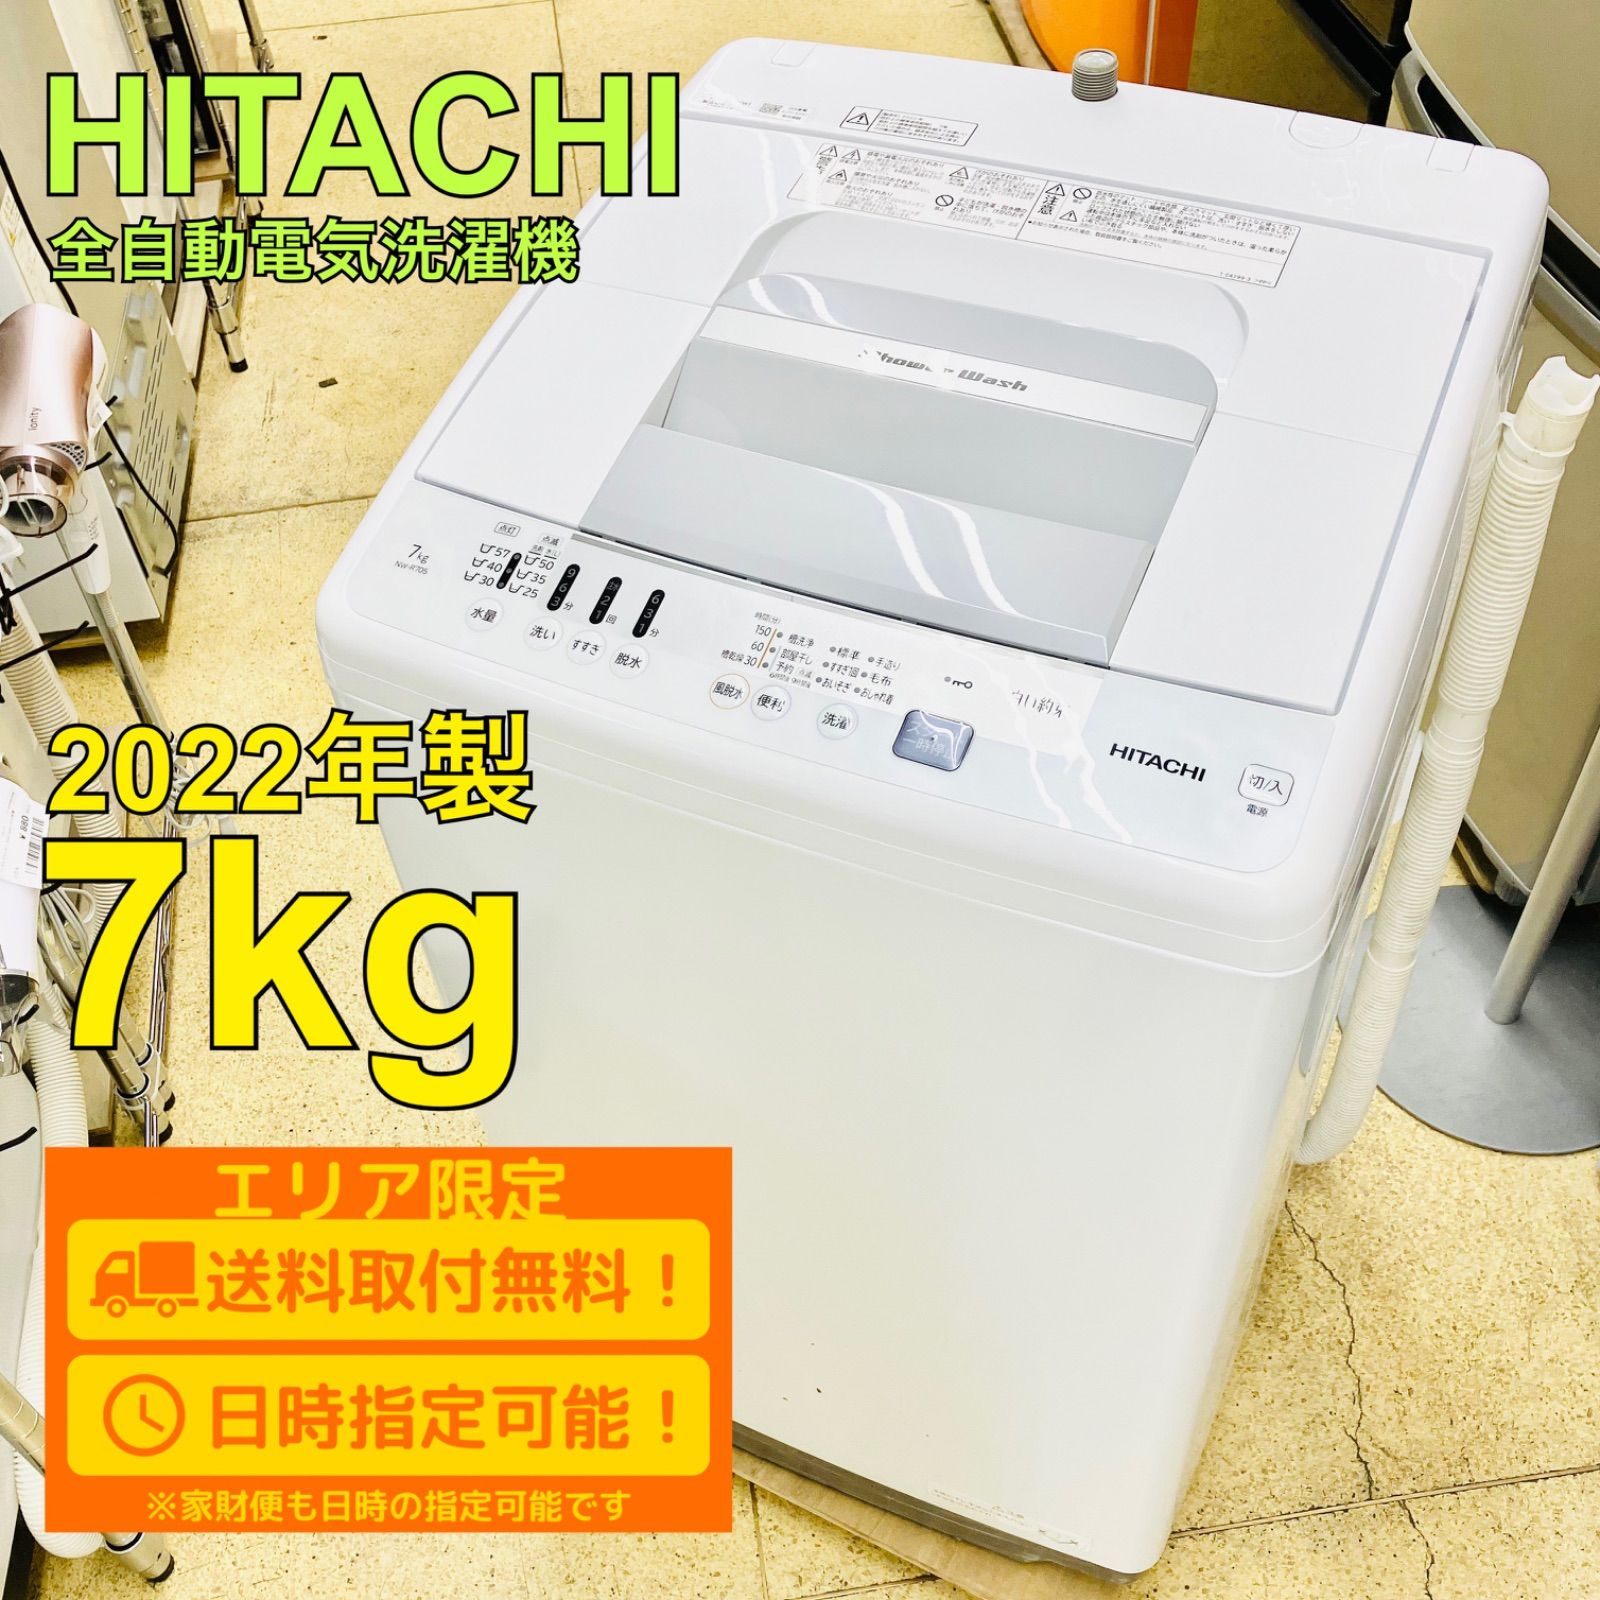 2022年式 HITACHI 洗濯機 7キロ-